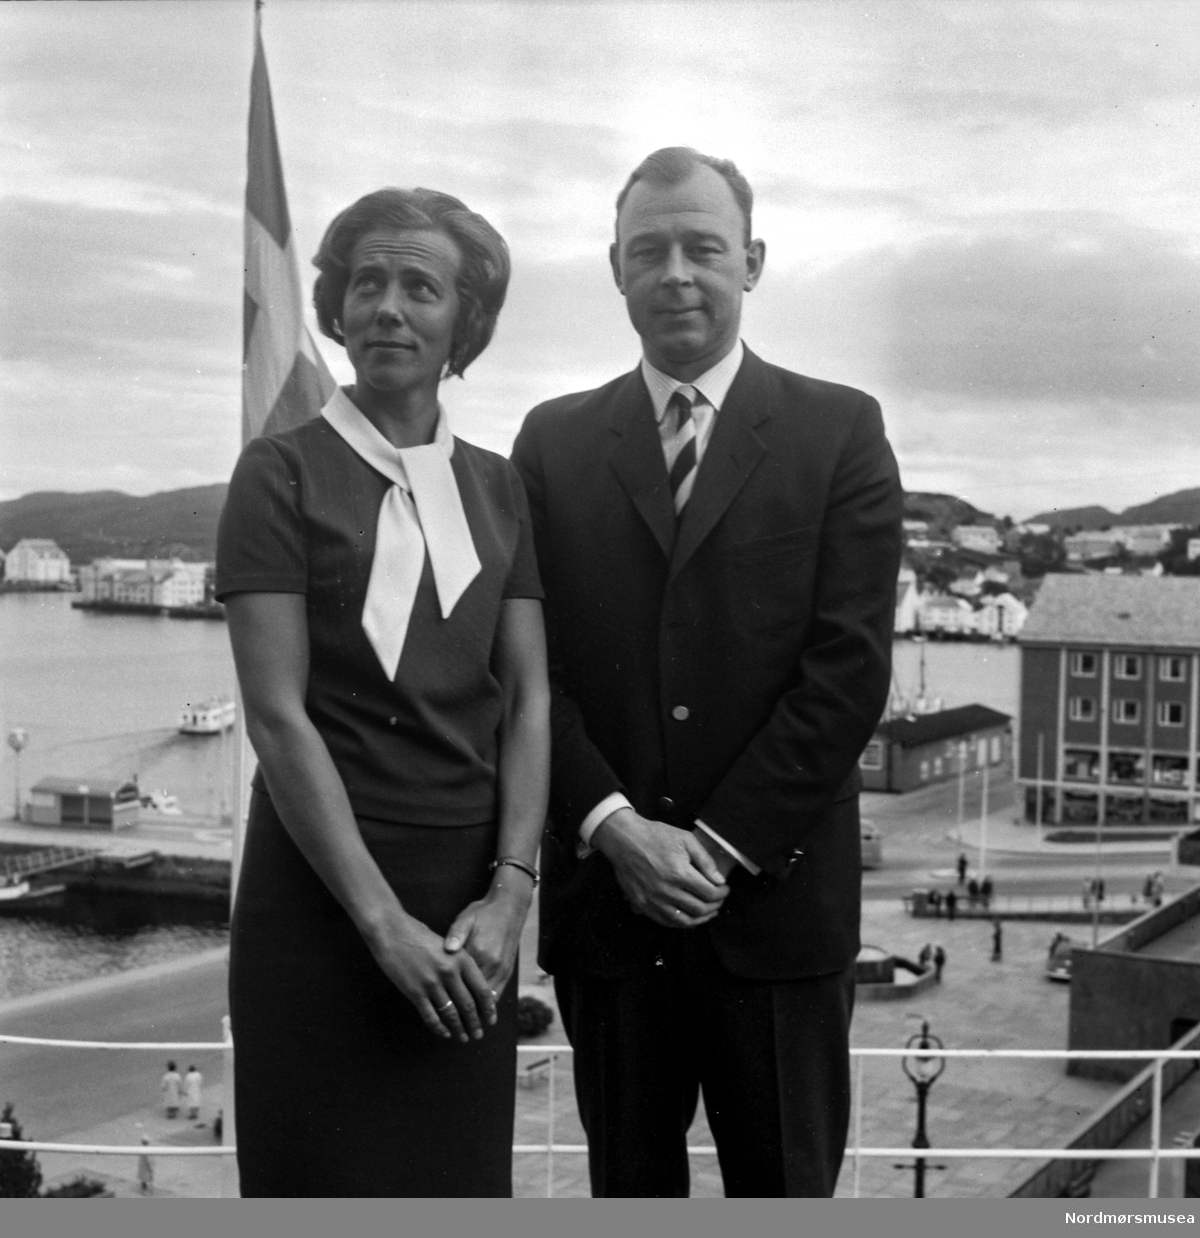 Påført tekst negativholder: "Direktør med frue (Fosna)." Foto dateres til august 1966. Fra Romsdalspostens arkiv.